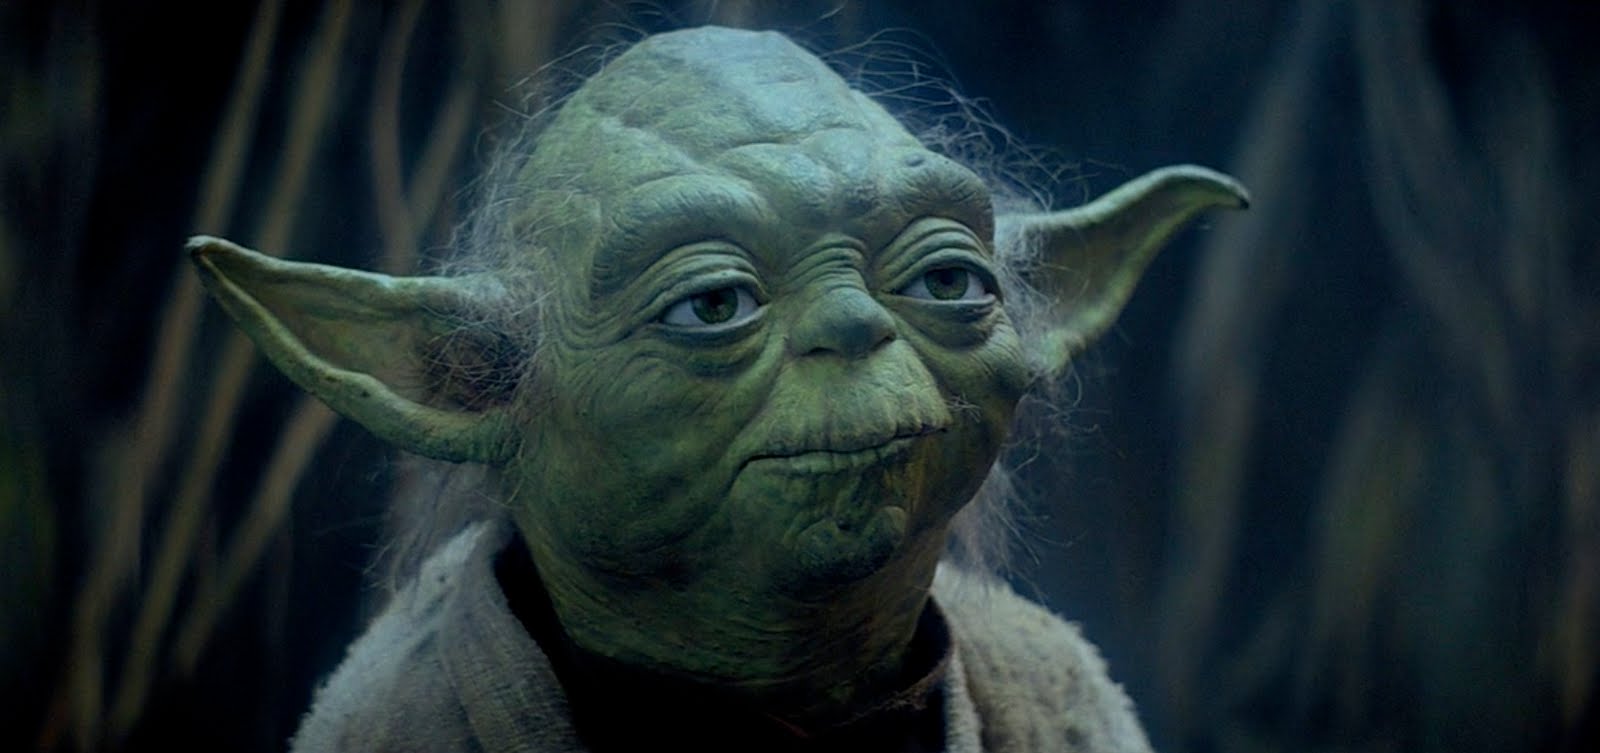 Yoda stares